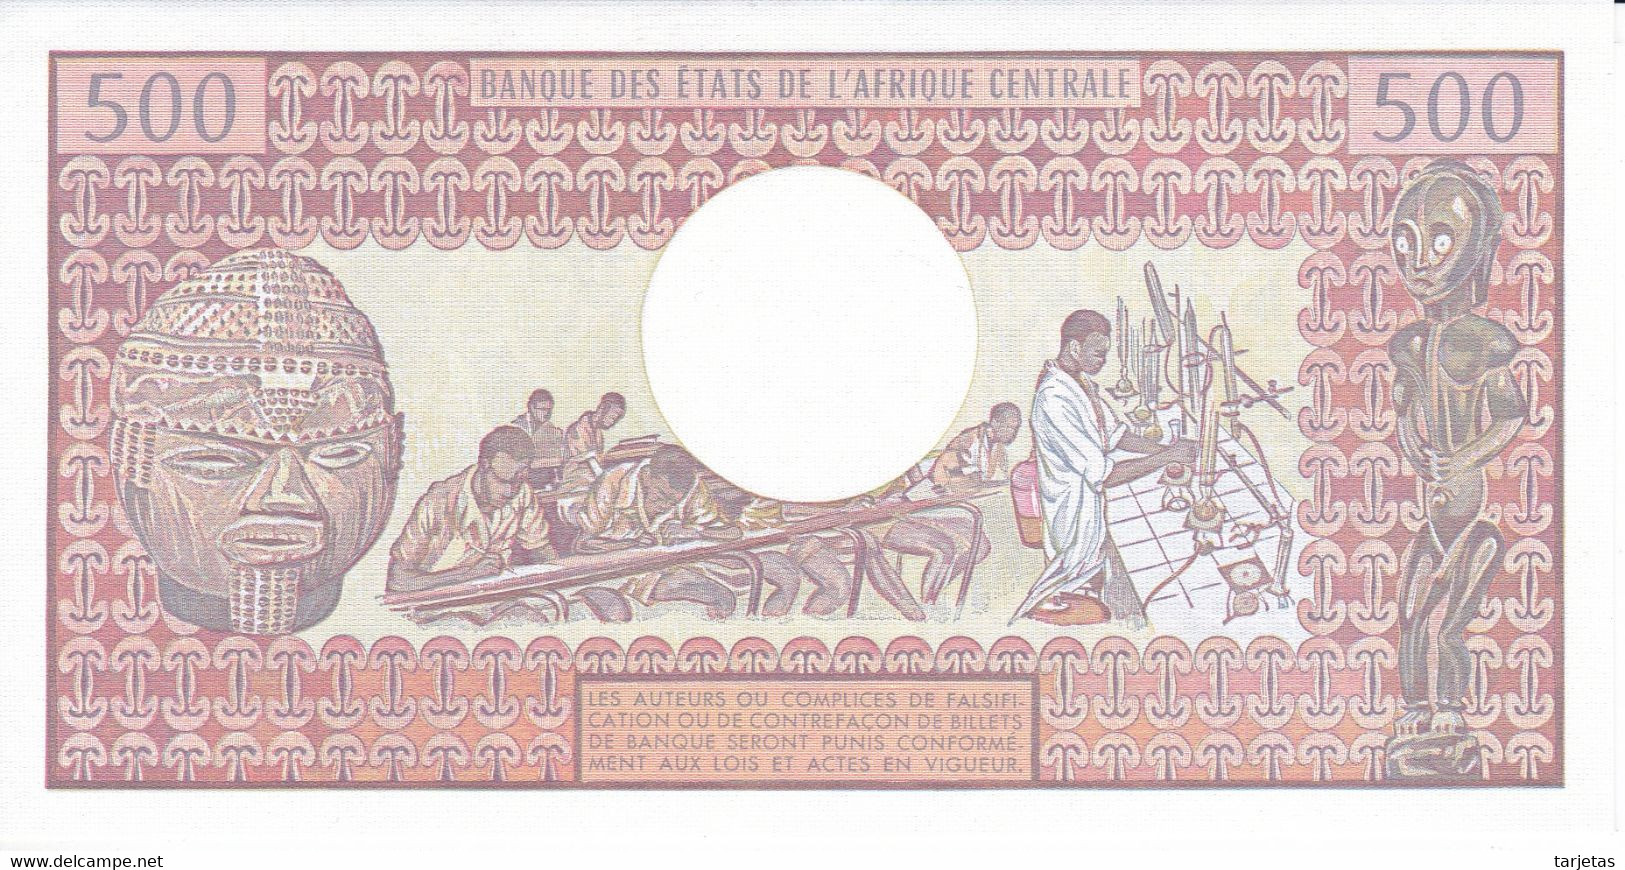 BILLETE DE TCHAD DE 500 FRANCS DEL AÑO 1984 SIN CIRCULAR-UNCIRCULATED  (BANKNOTE) - Tchad